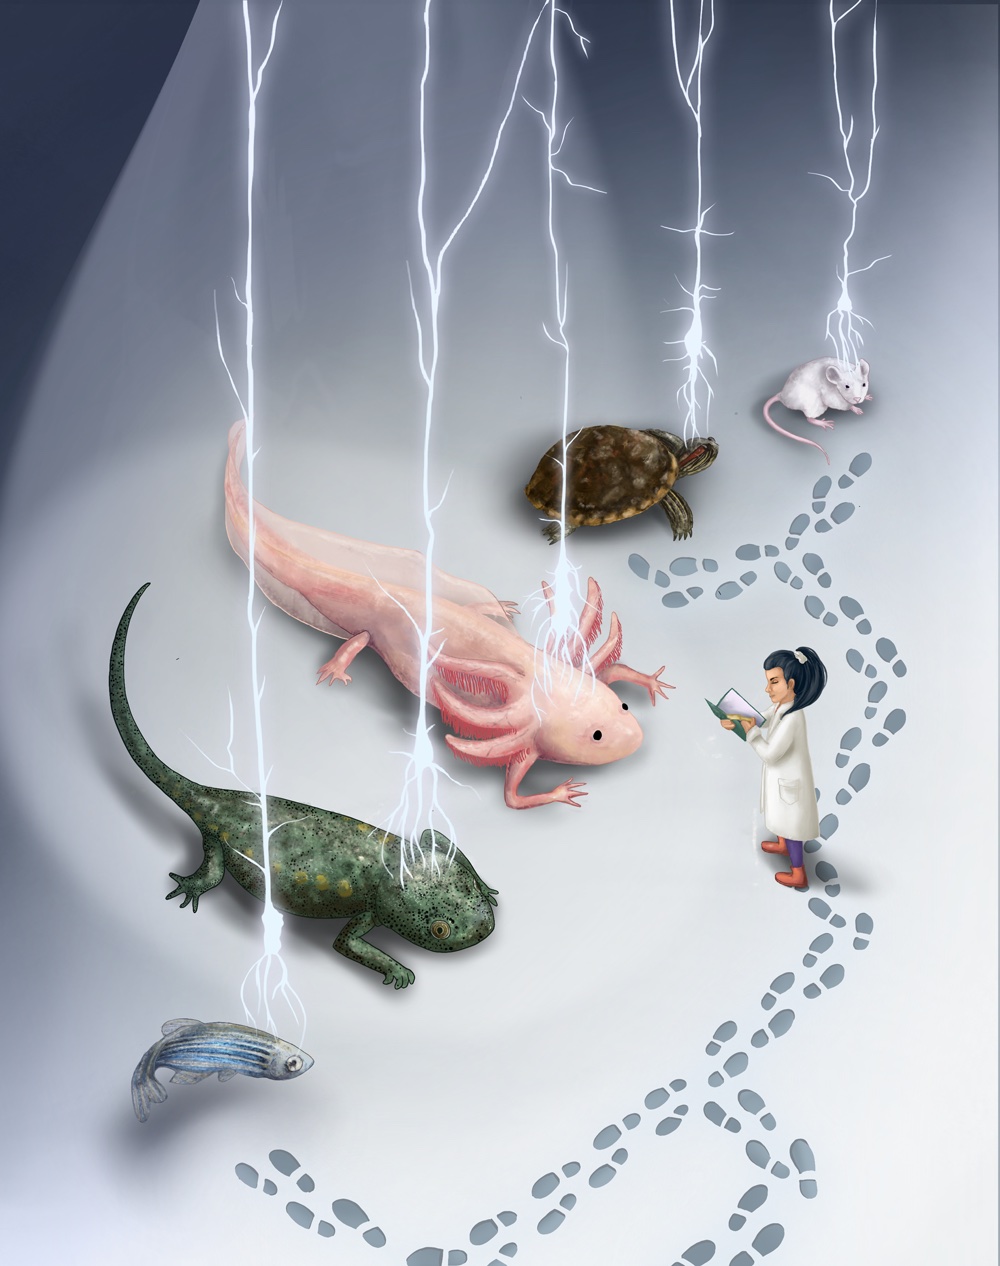 illustration mapping axolotl evolution